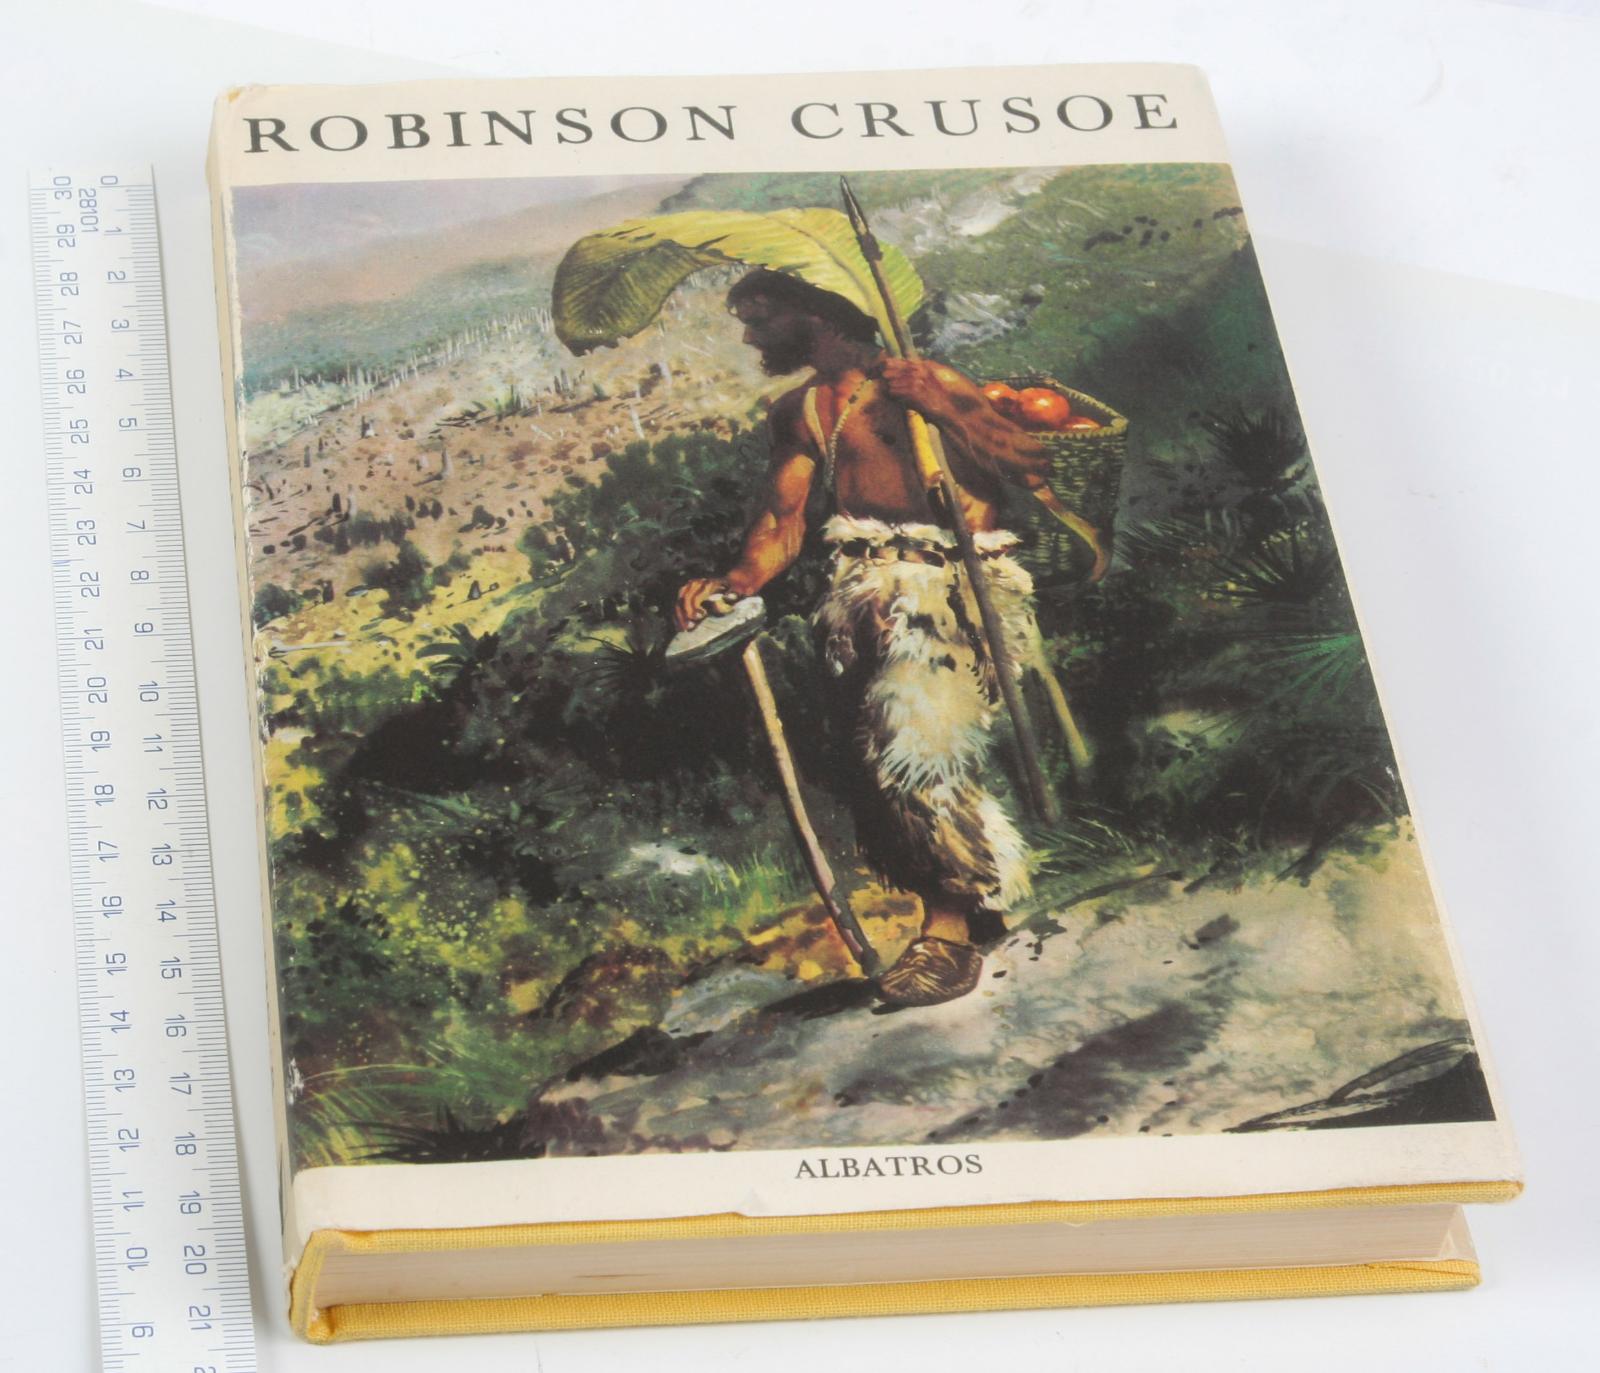 Robinson Grusoe - Albatros 1977, Ilustrácia Z. Burian. - Knihy a časopisy